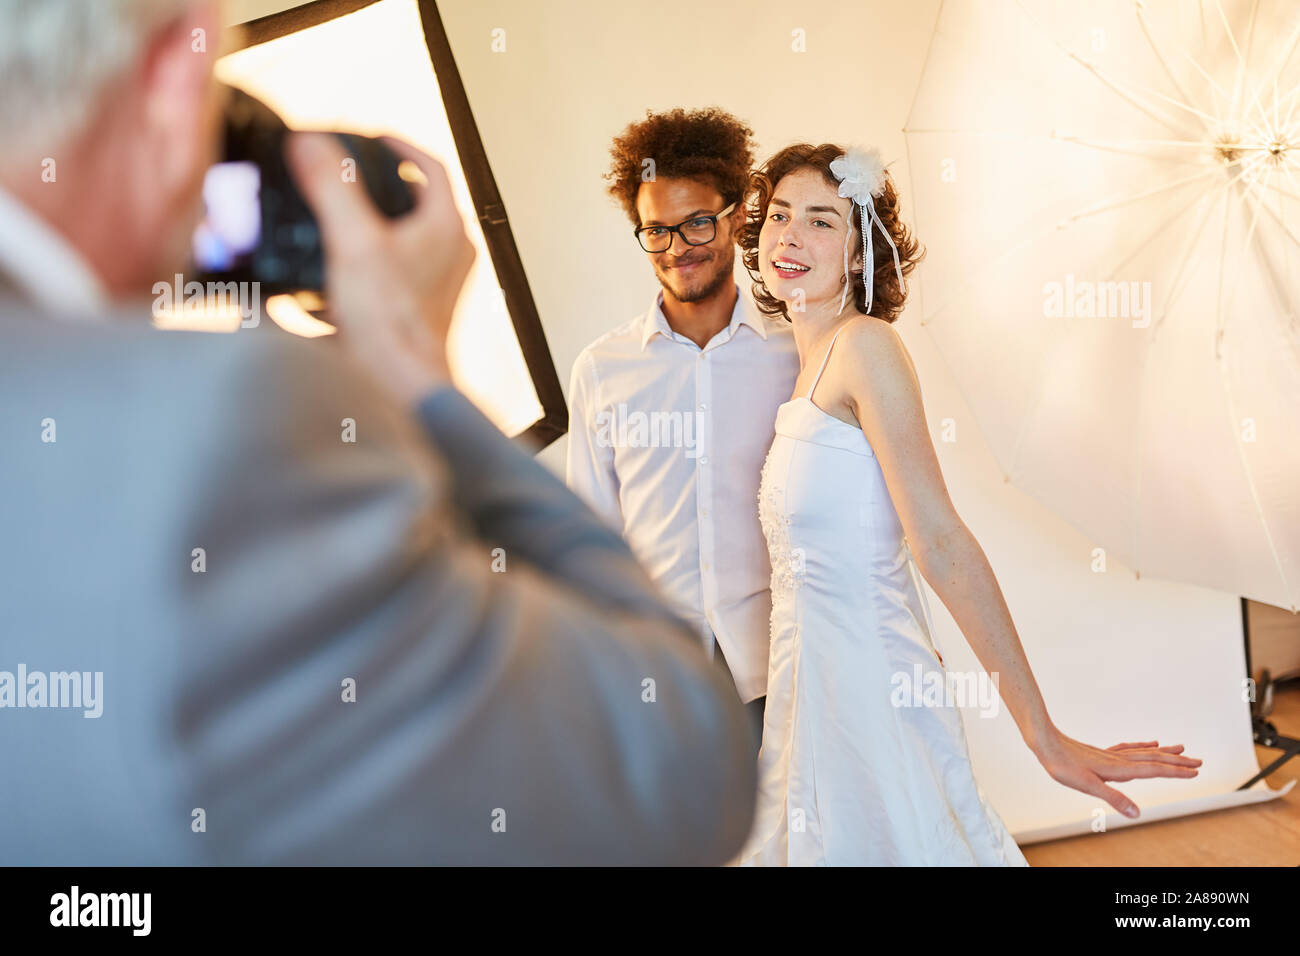 Photographe de mariage photos de mariage heureux couples nuptiales sur jour en studio Banque D'Images